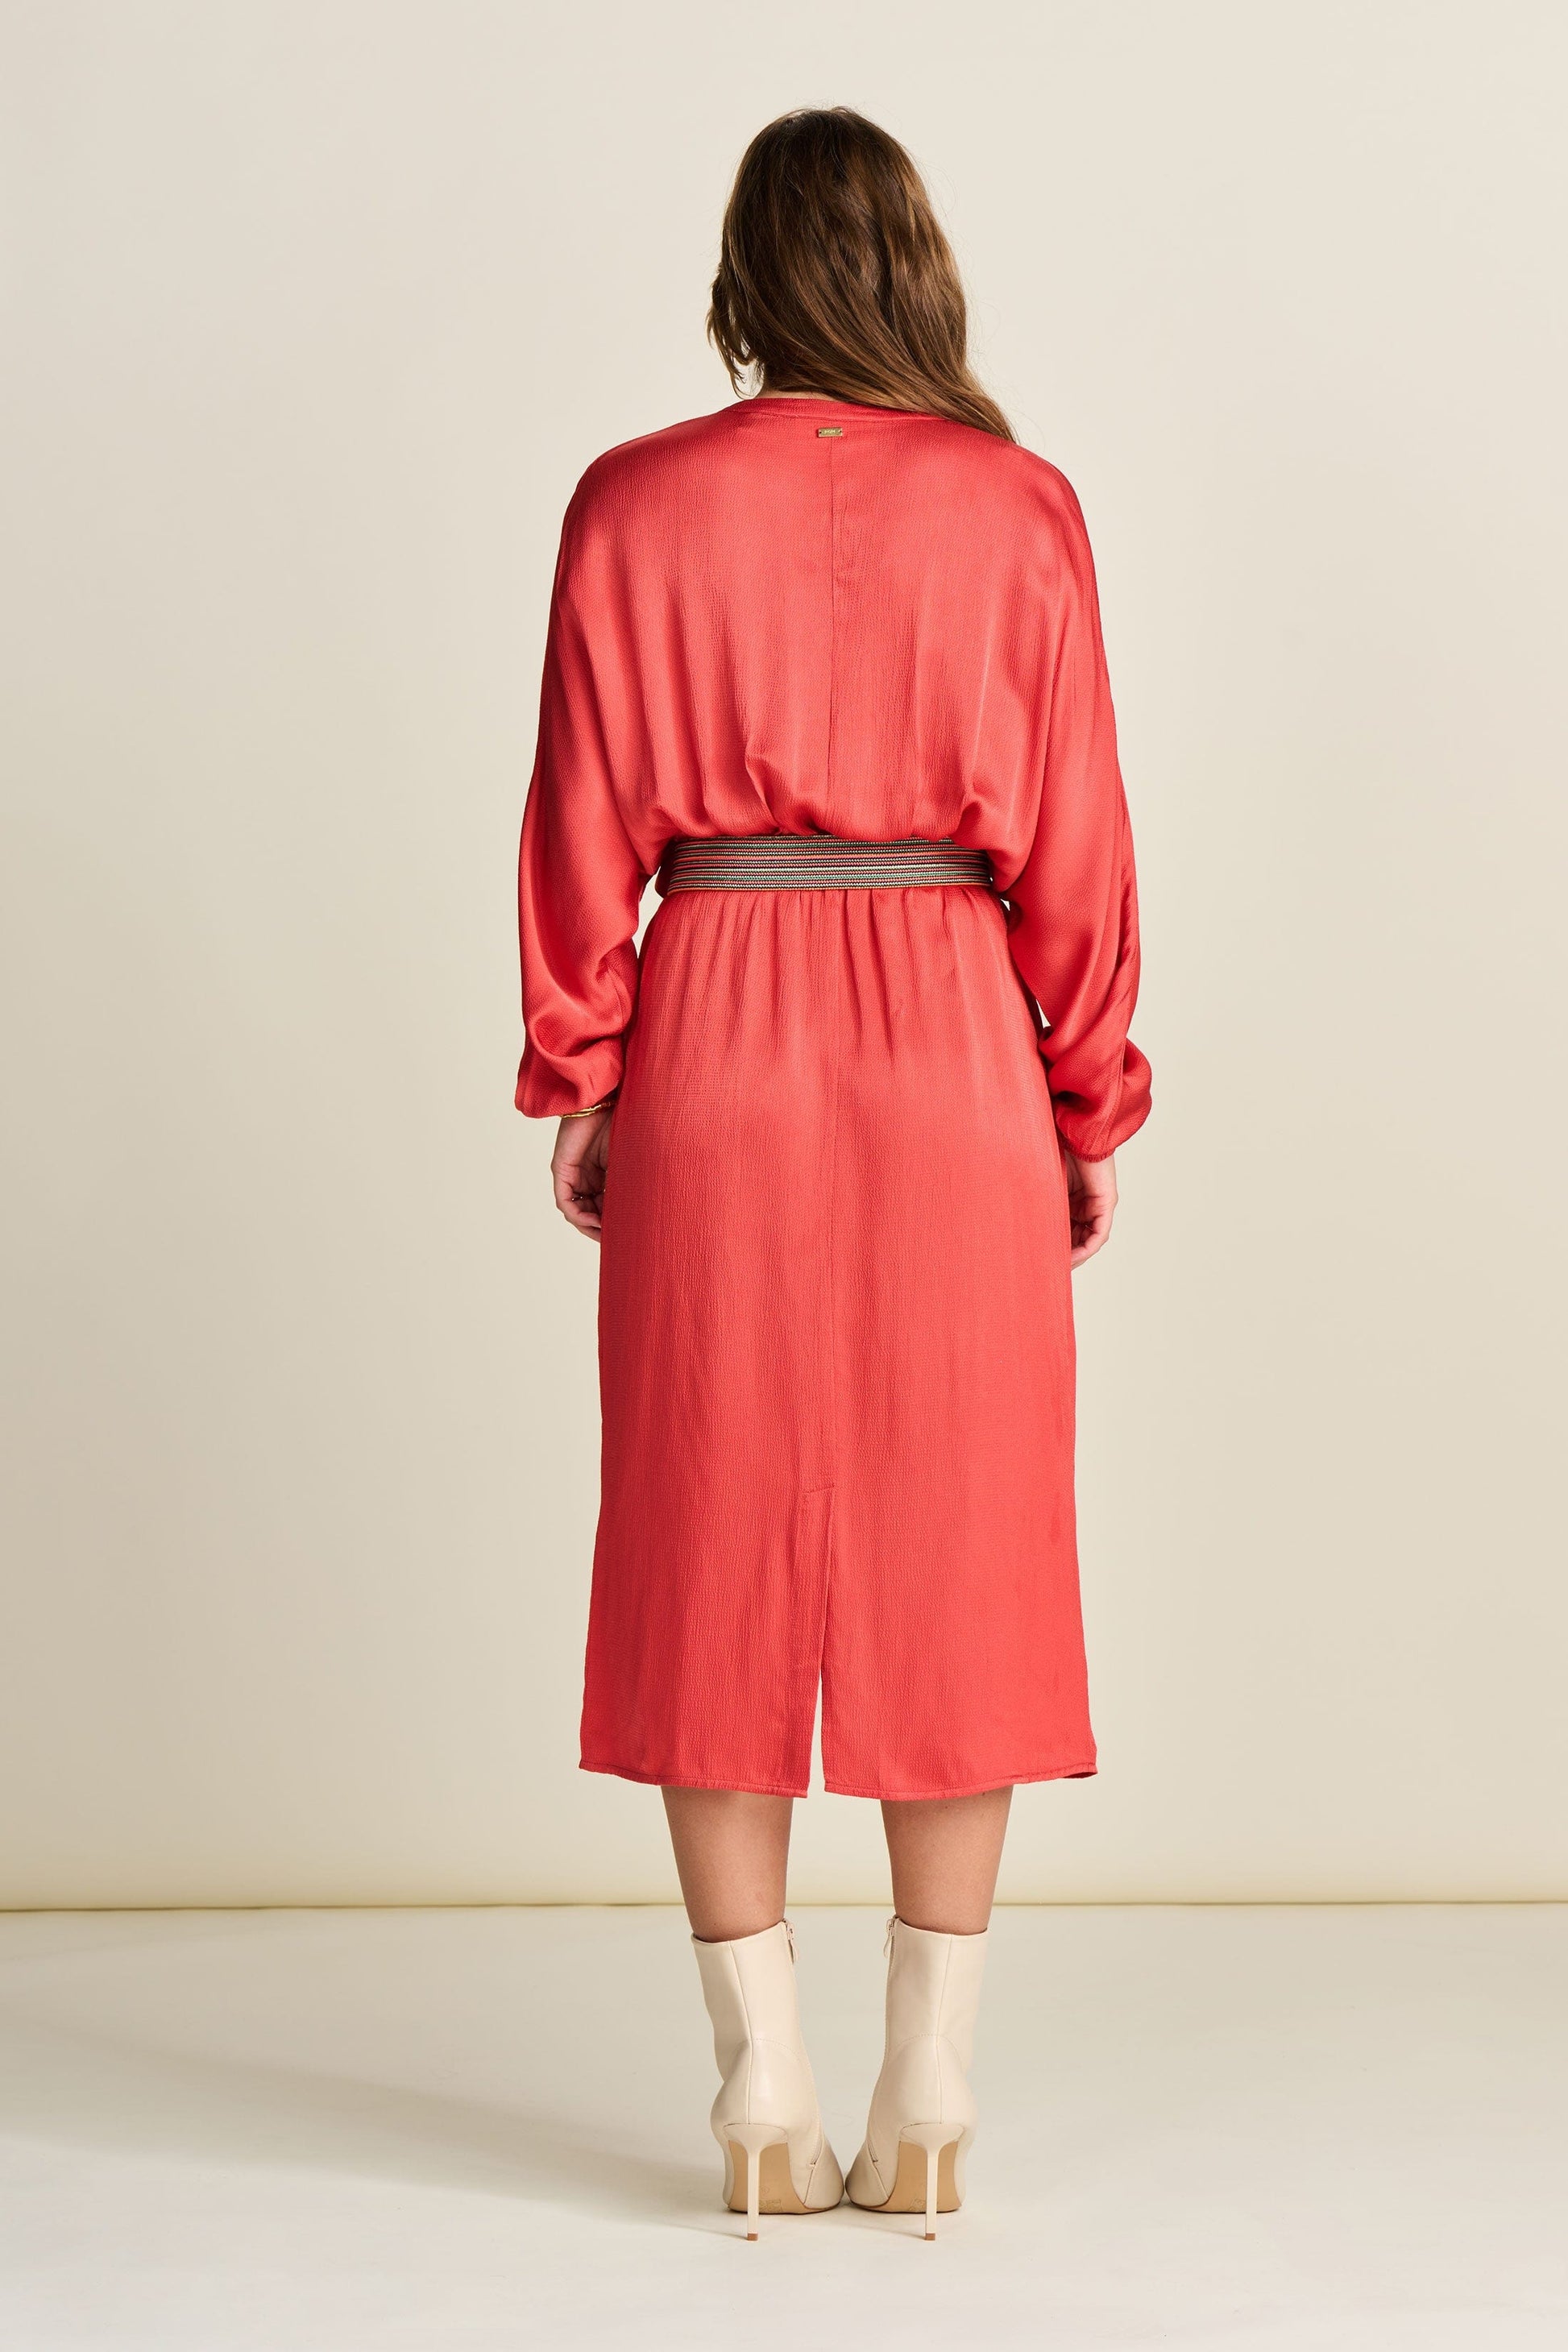 POM Amsterdam Dresses DRESS - Baked Red